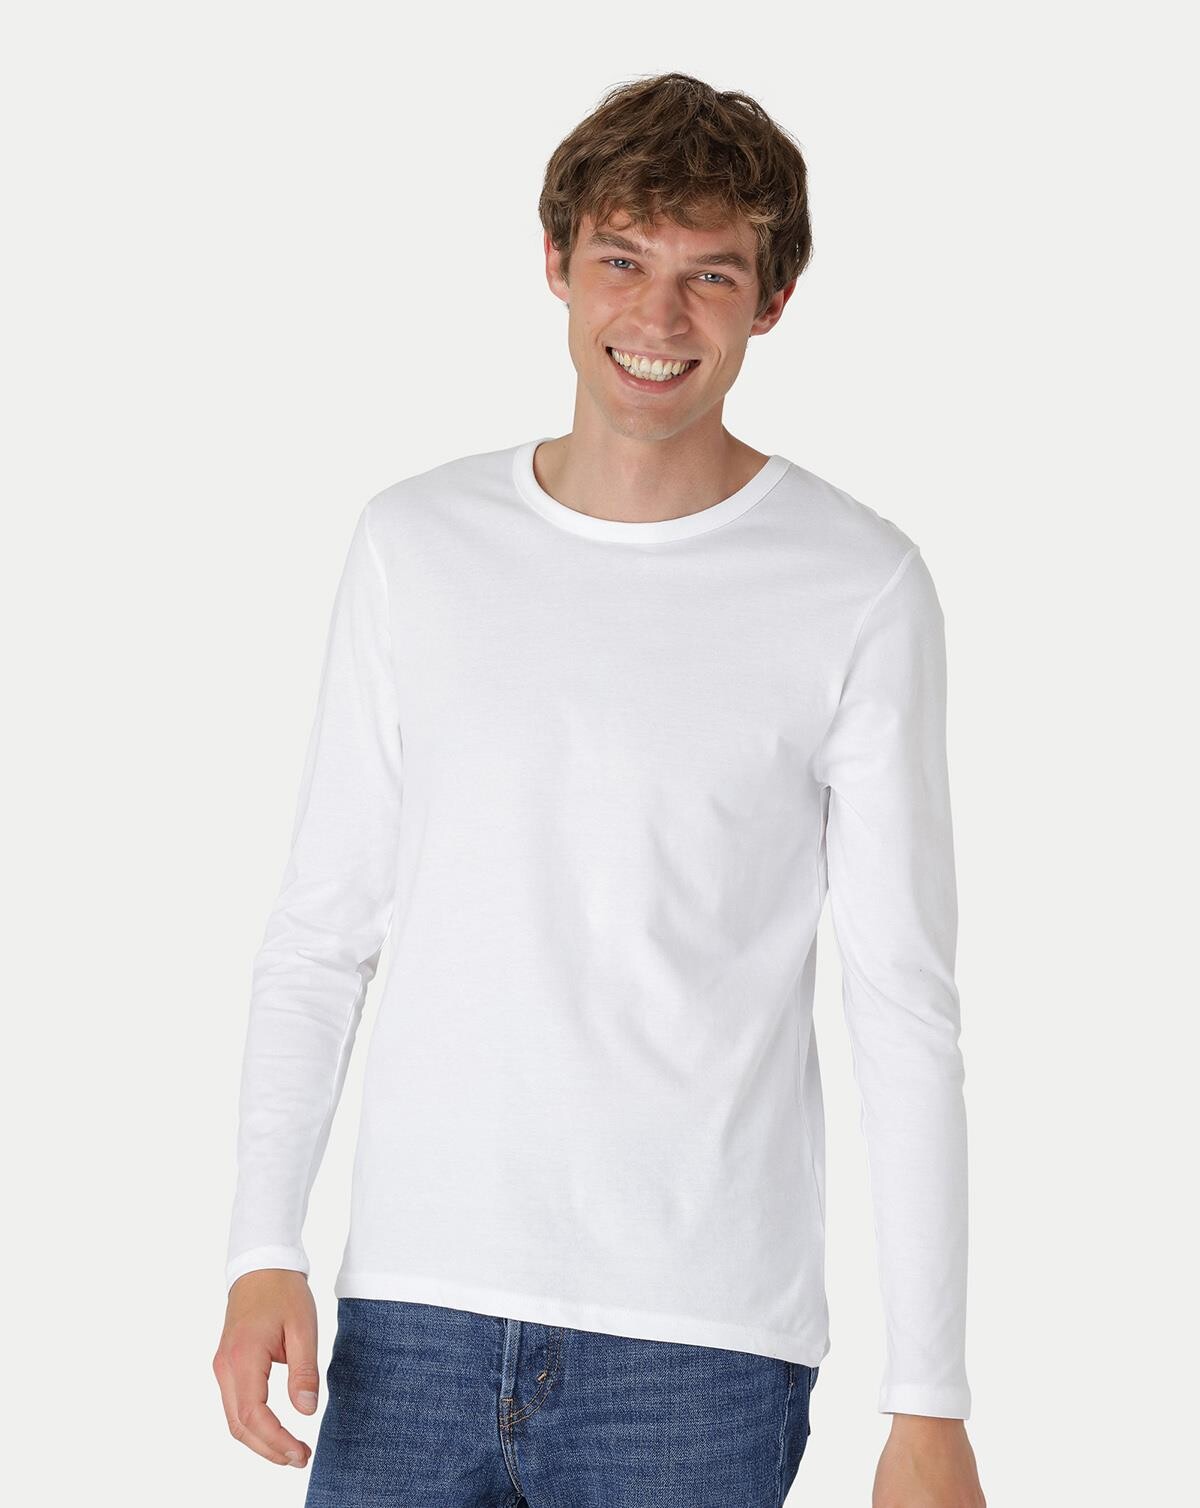 Neutral Økologisk Langærmet T-shirt (Hvid, S)